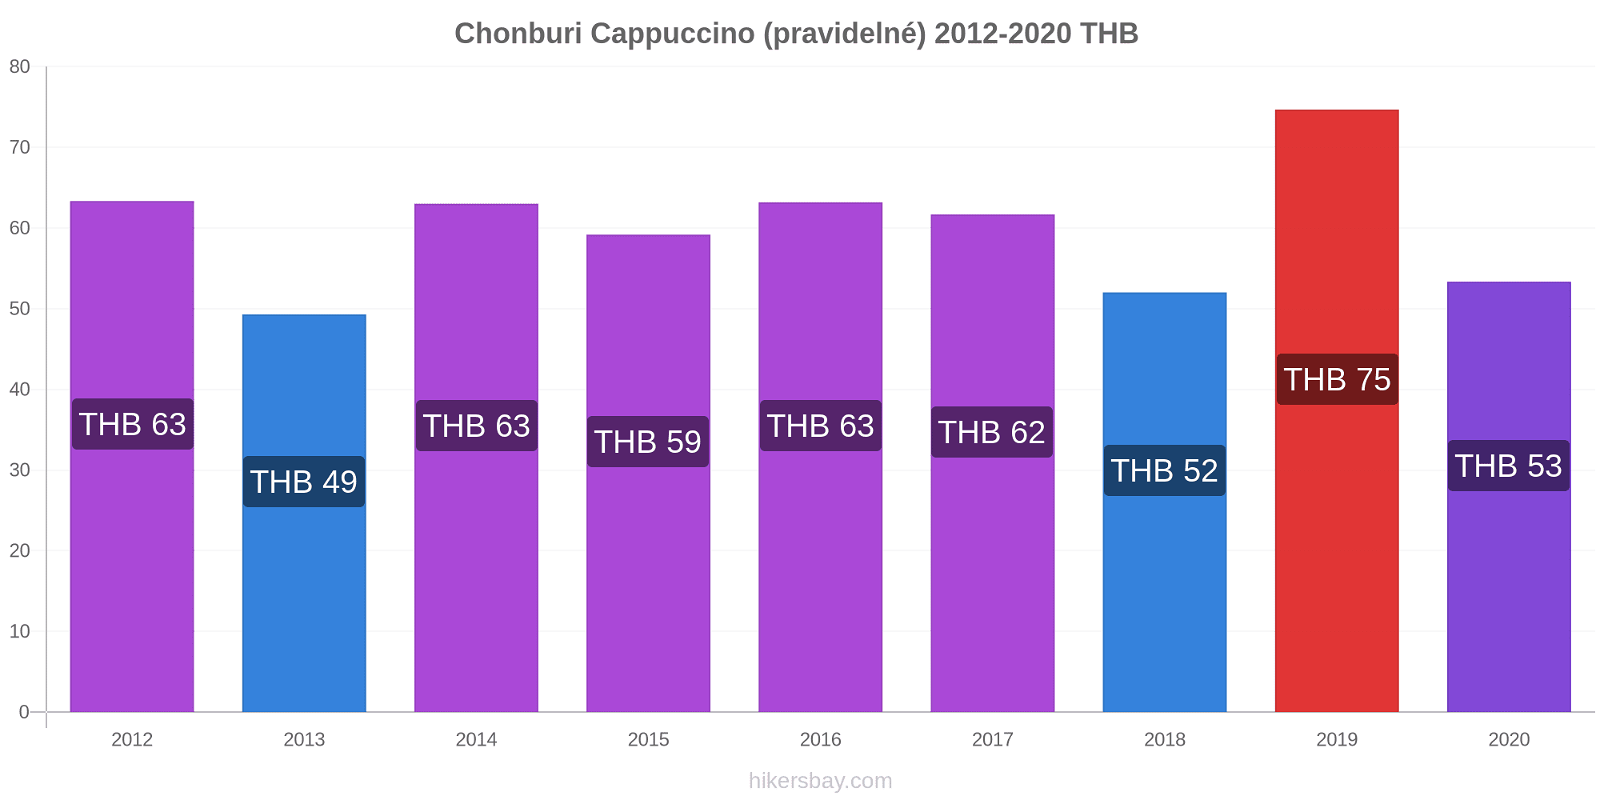 Chonburi změny cen Cappuccino (pravidelné) hikersbay.com